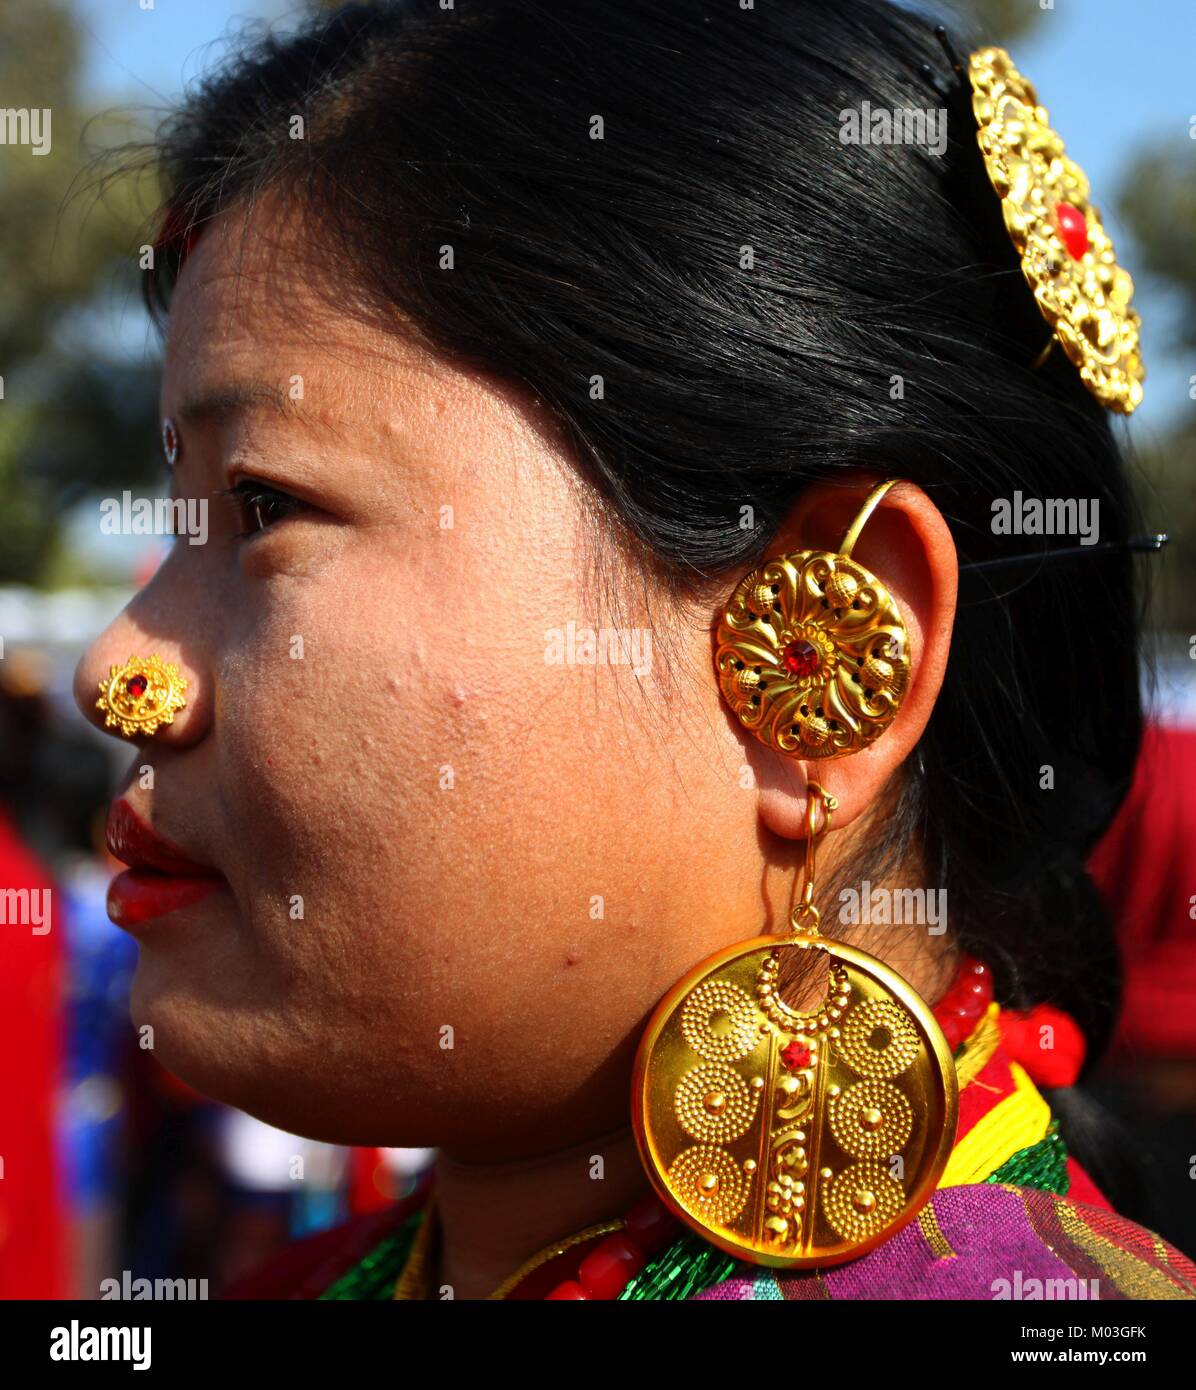 Kathmandu, Nepal. 18 gennaio, 2018. Una donna da Tamang comunità indossa gioielli etnici per celebrare Sonam Lhosar festival in Kathmandu, che segna la fine dell'anno di uccelli e l'inizio dell anno del cane. Sonam Lhosar è osservato come il nuovo anno lunare dai Tamang comunità etnico gruppo di indigeni che vivono in Nepal. Credito: Archana Shrestha che Pacifico/press/Alamy Live News Foto Stock